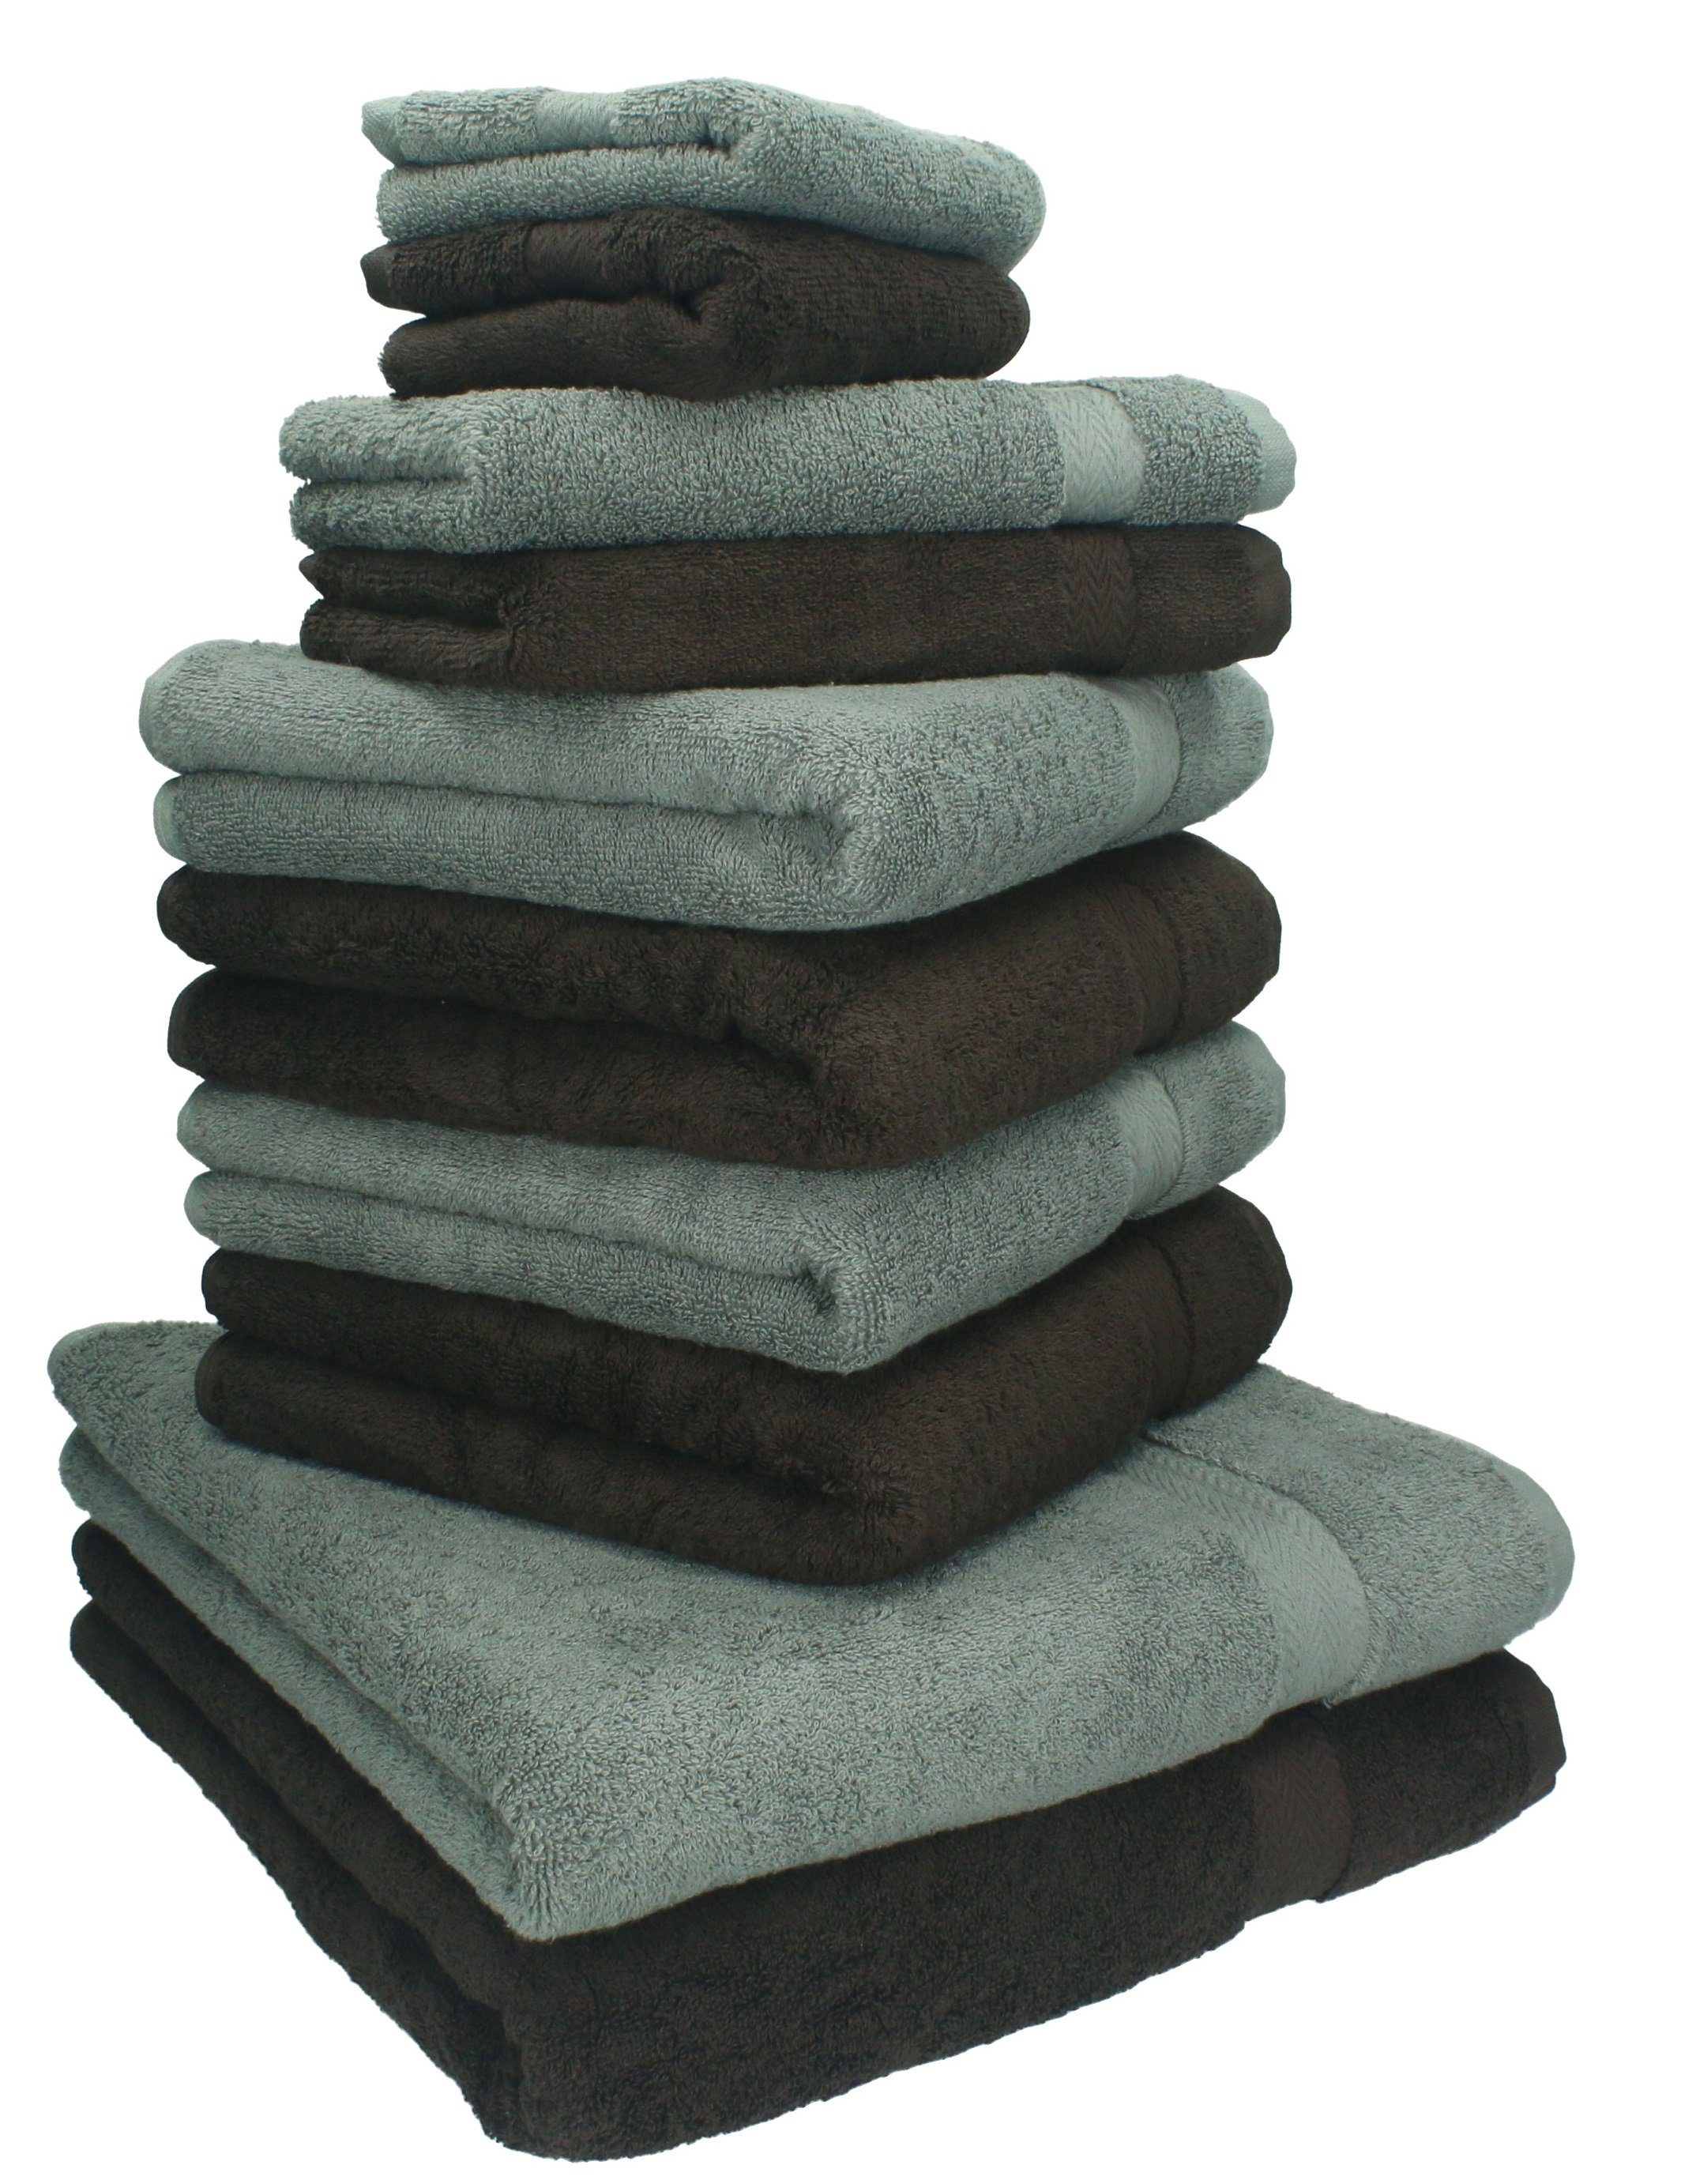 Betz Handtuch Set dunkelbraun Classic Baumwolle Farbe und 100% anthrazit, 10-TLG. Handtuch-Set